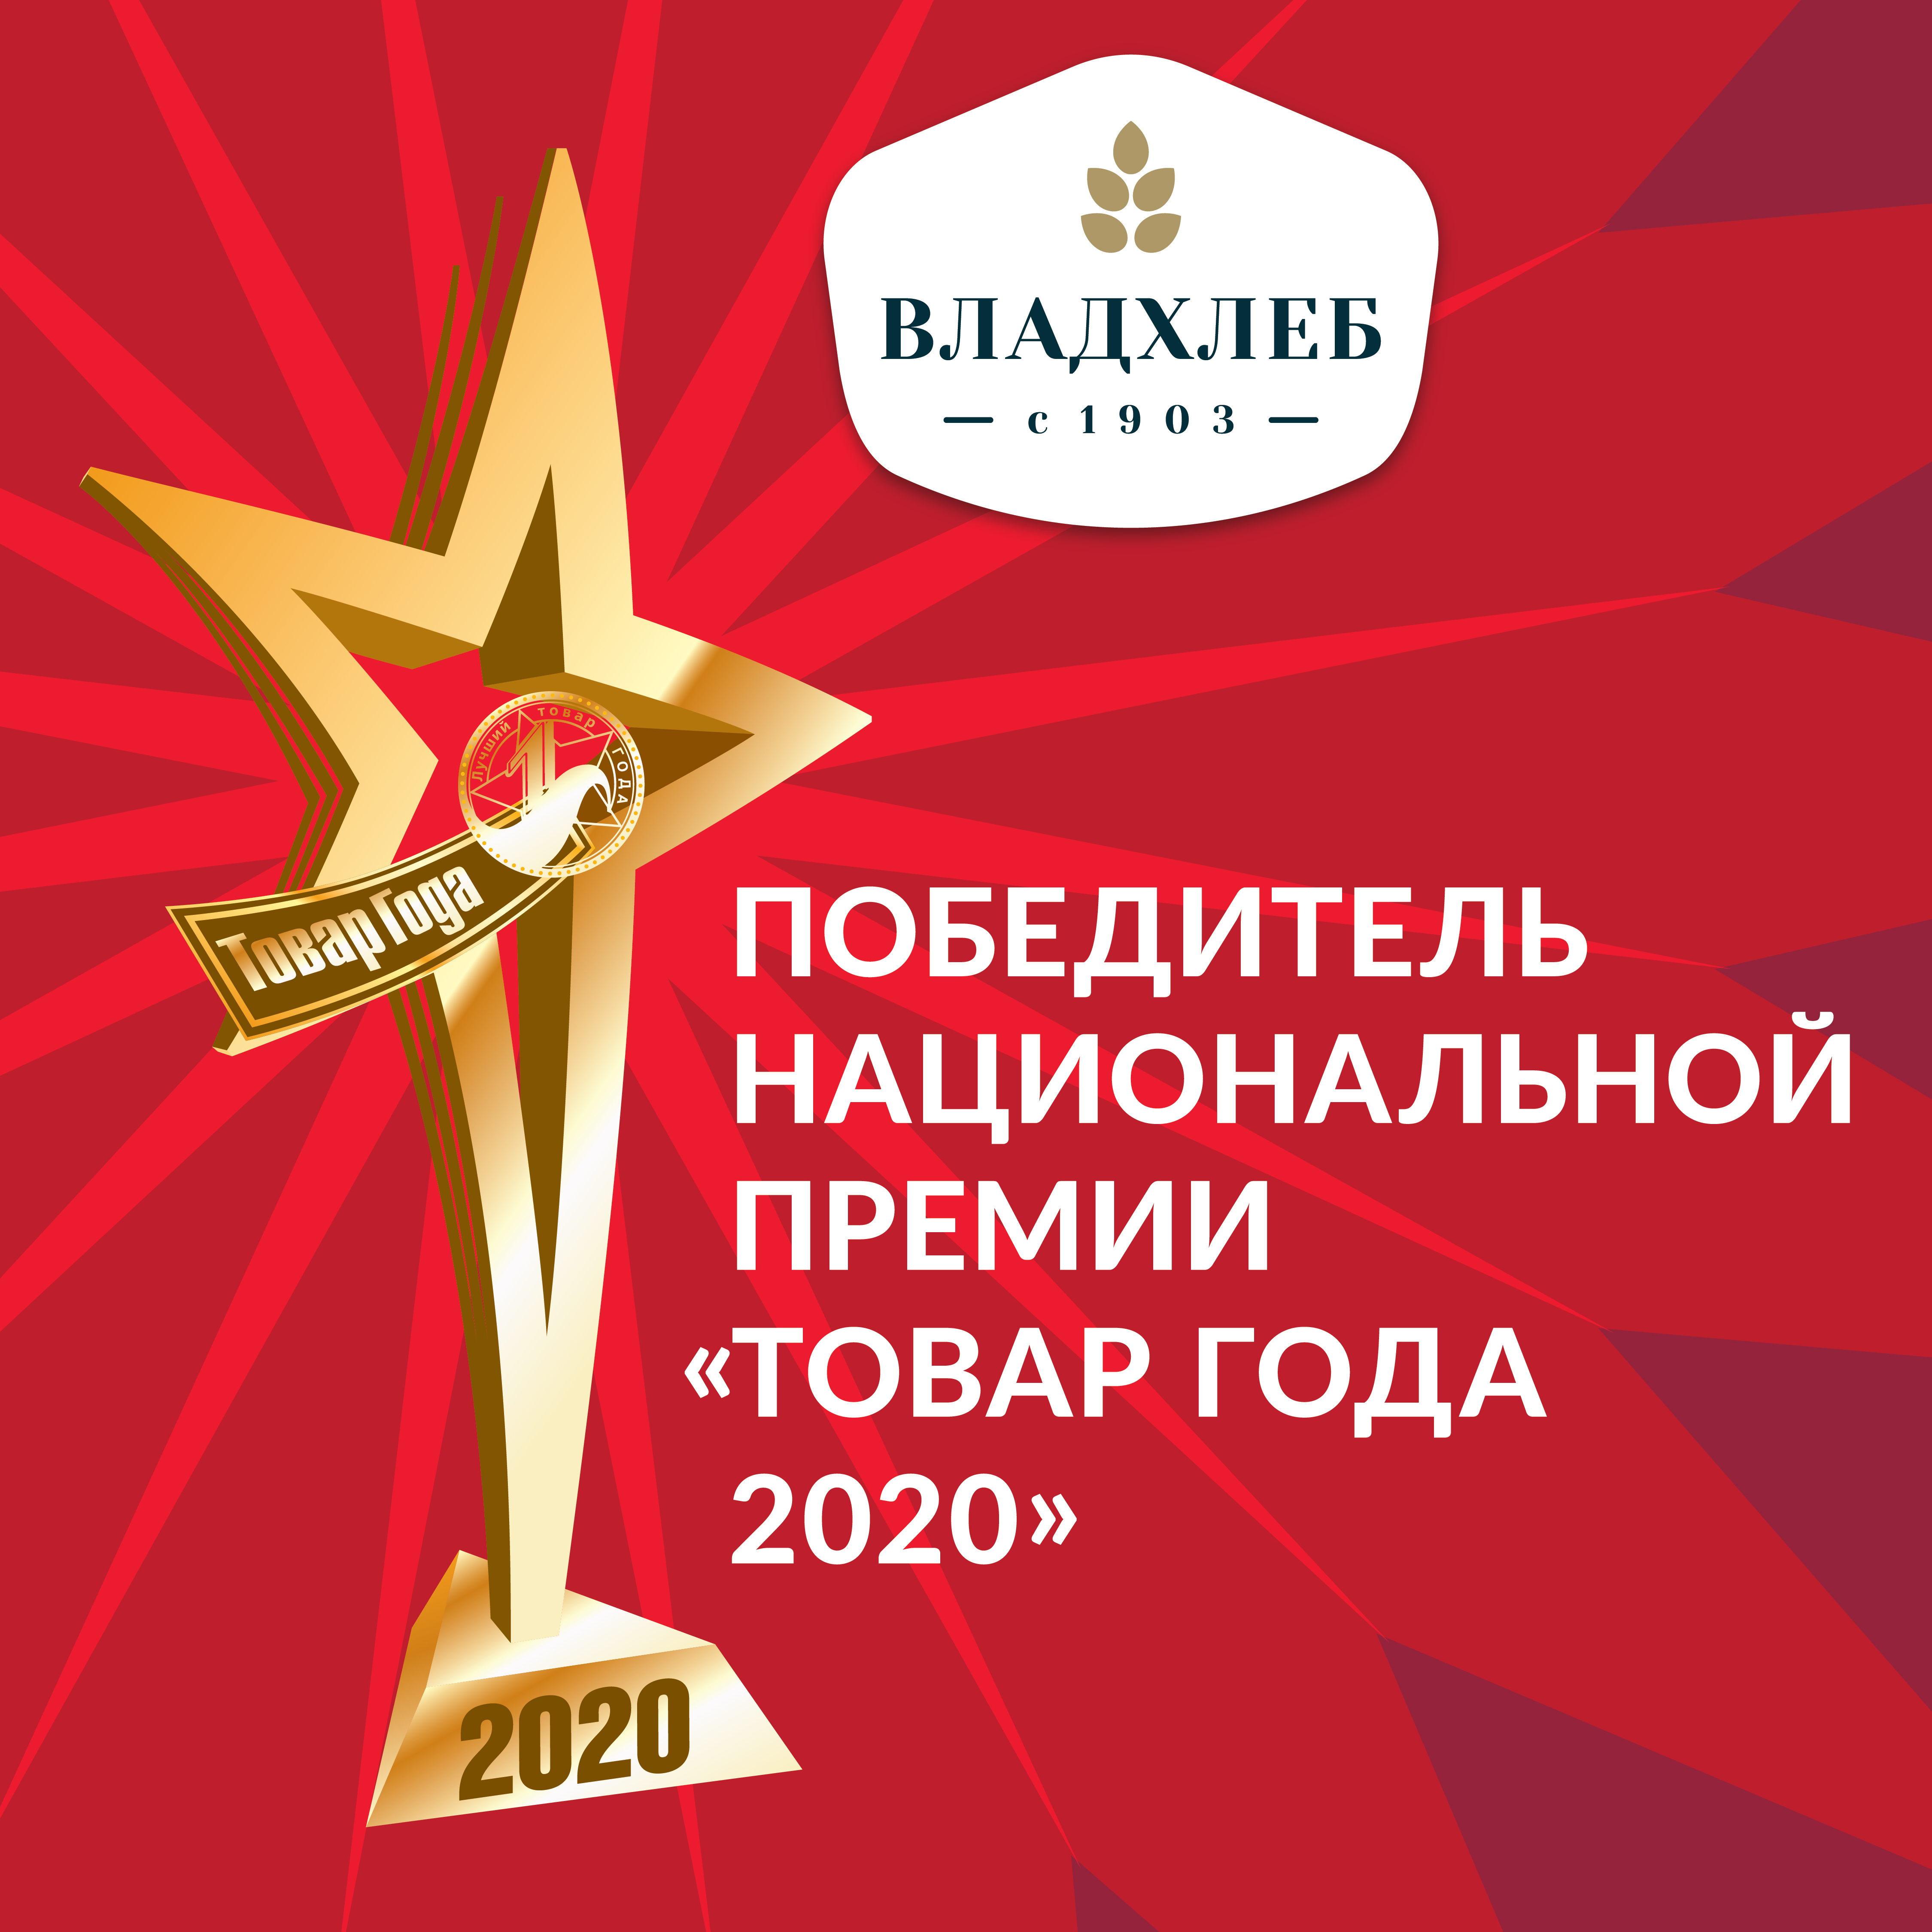 «Владхлеб» получил звезду национальной премии «Товар года»